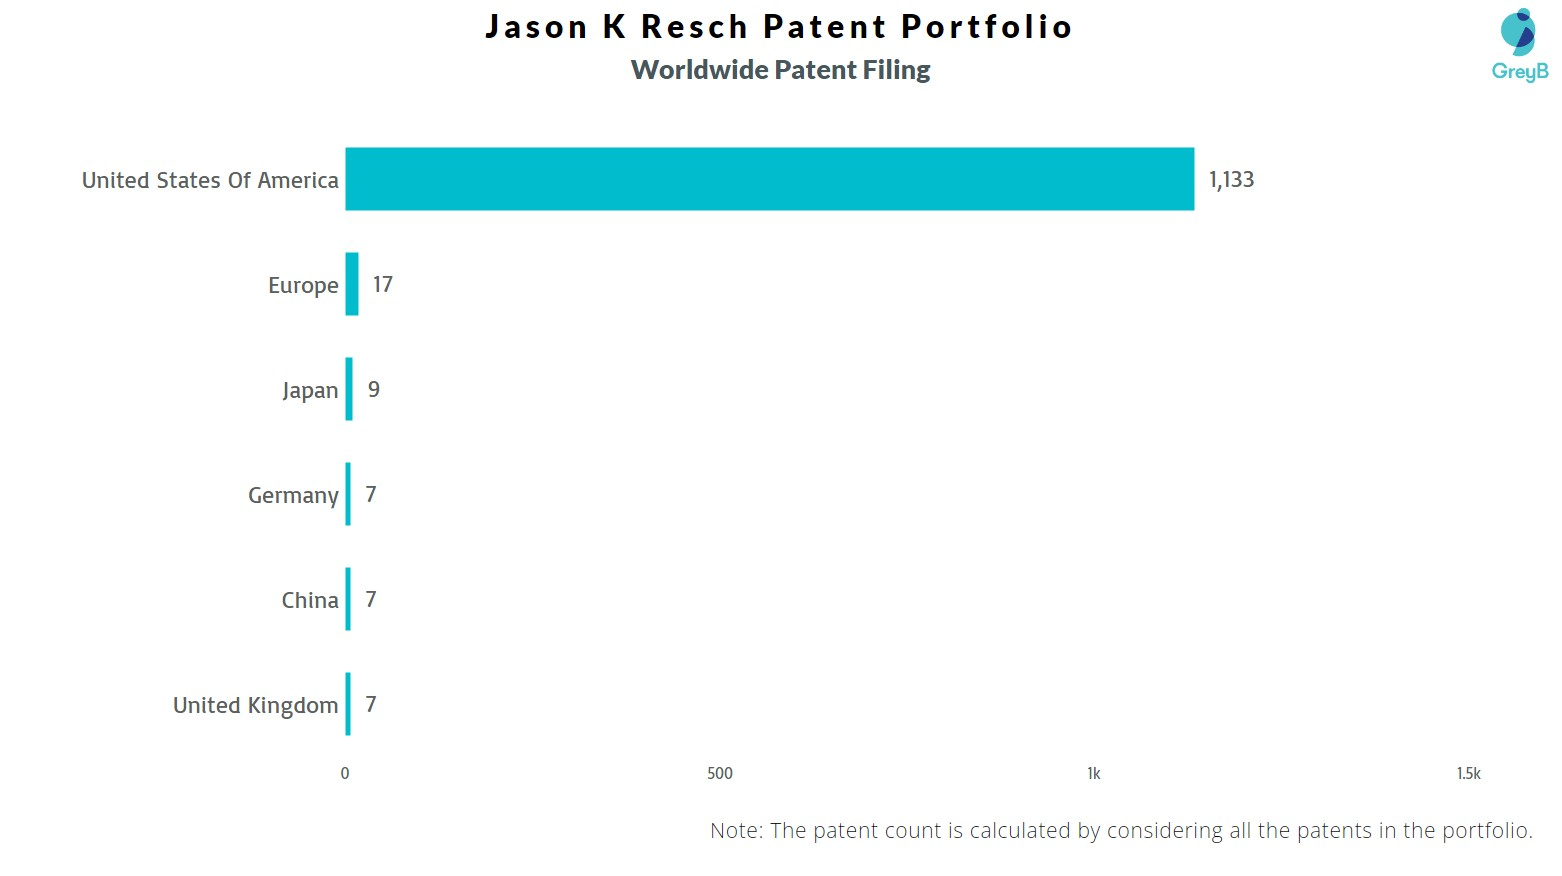 Jason K Resch Worldwide Patent Filing